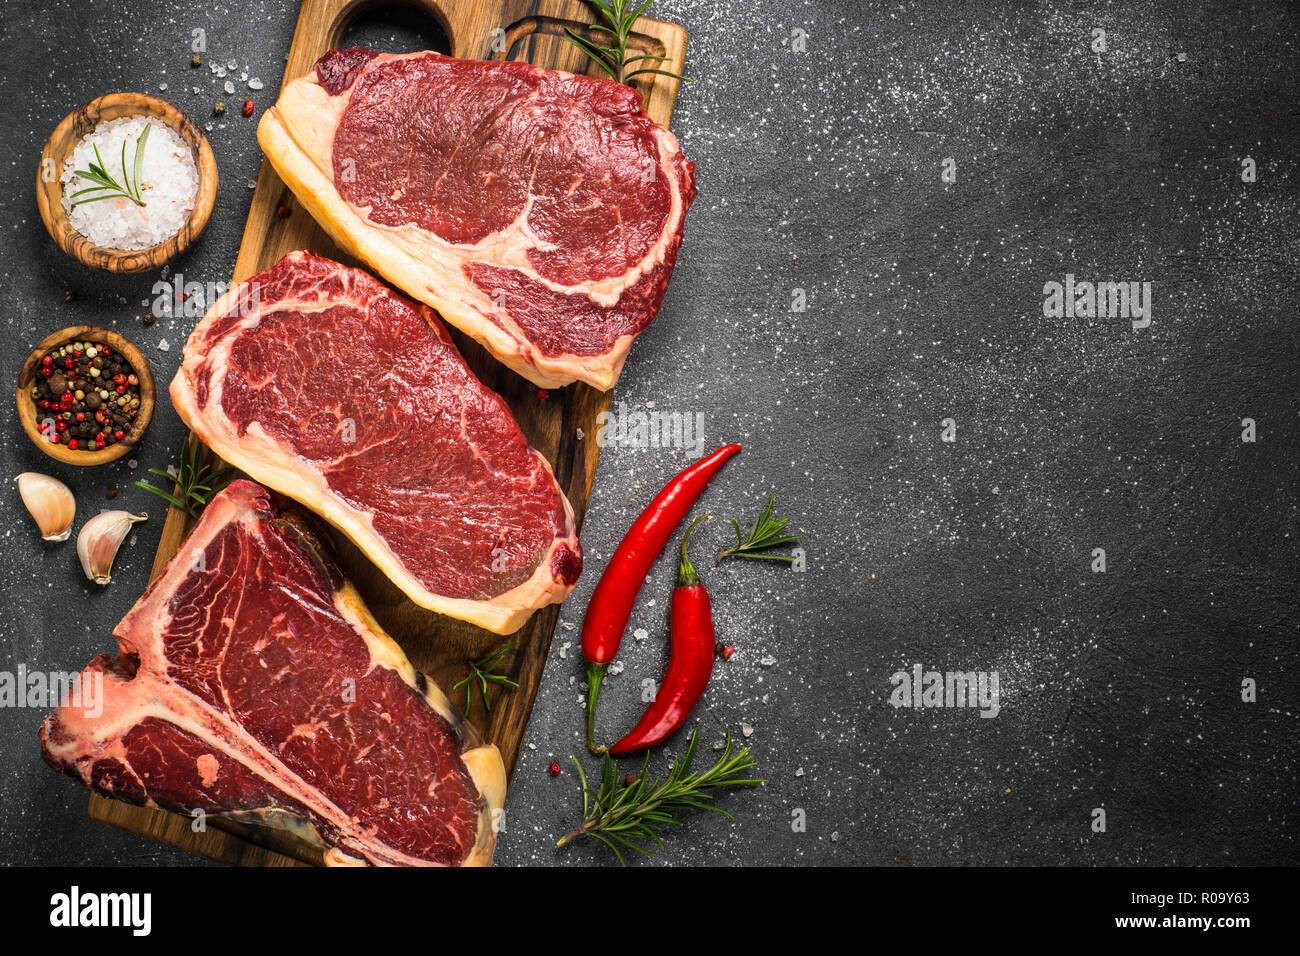 Rohes Fleisch Rindfleisch Steak. Black Angus Prime Fleisch - Ribeye, Roastbeef, T-Bone Steaks auf Schneidebrett. Draufsicht auf Schwarzer Tisch mit kopieren. Stockfoto